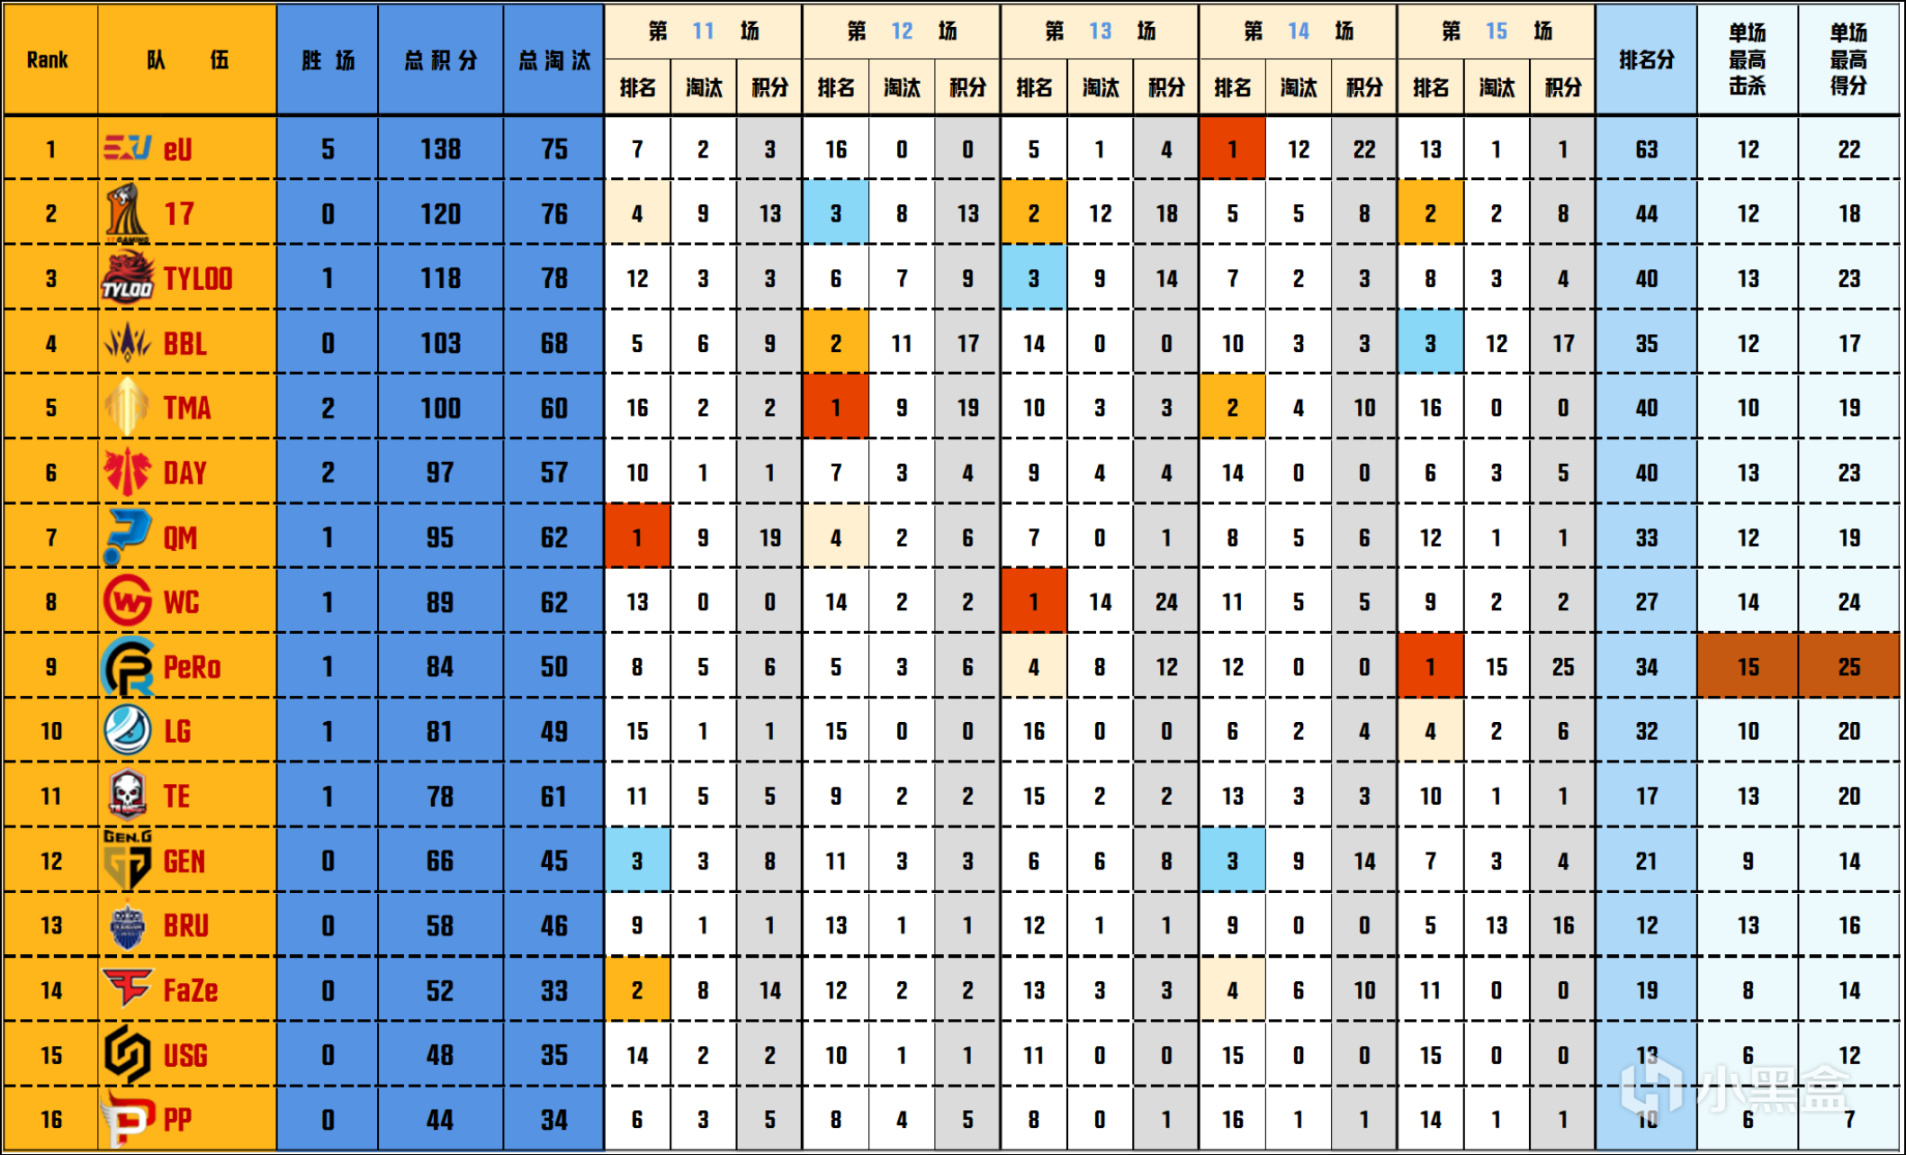 【数据流】PGC-B组,EU 138分第一,17 TYL TMA晋级胜者组,PeRo第9-第1张